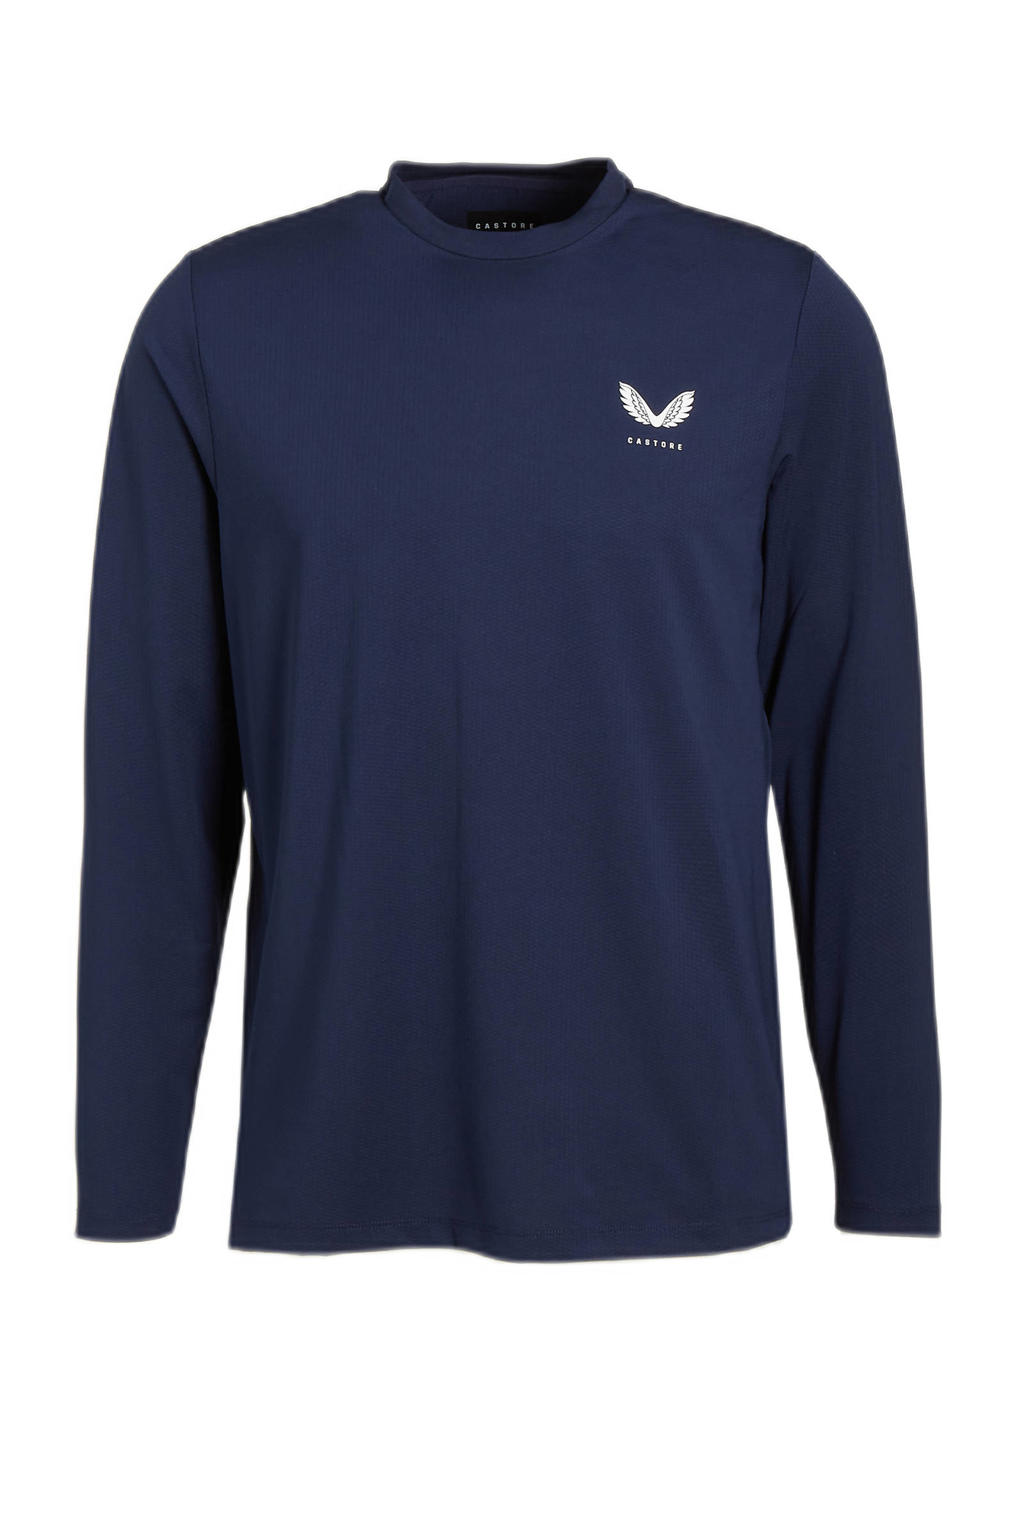 Donkerblauwe heren Castore sport T-shirt Protek van polyester met logo dessin, lange mouwen en ronde hals